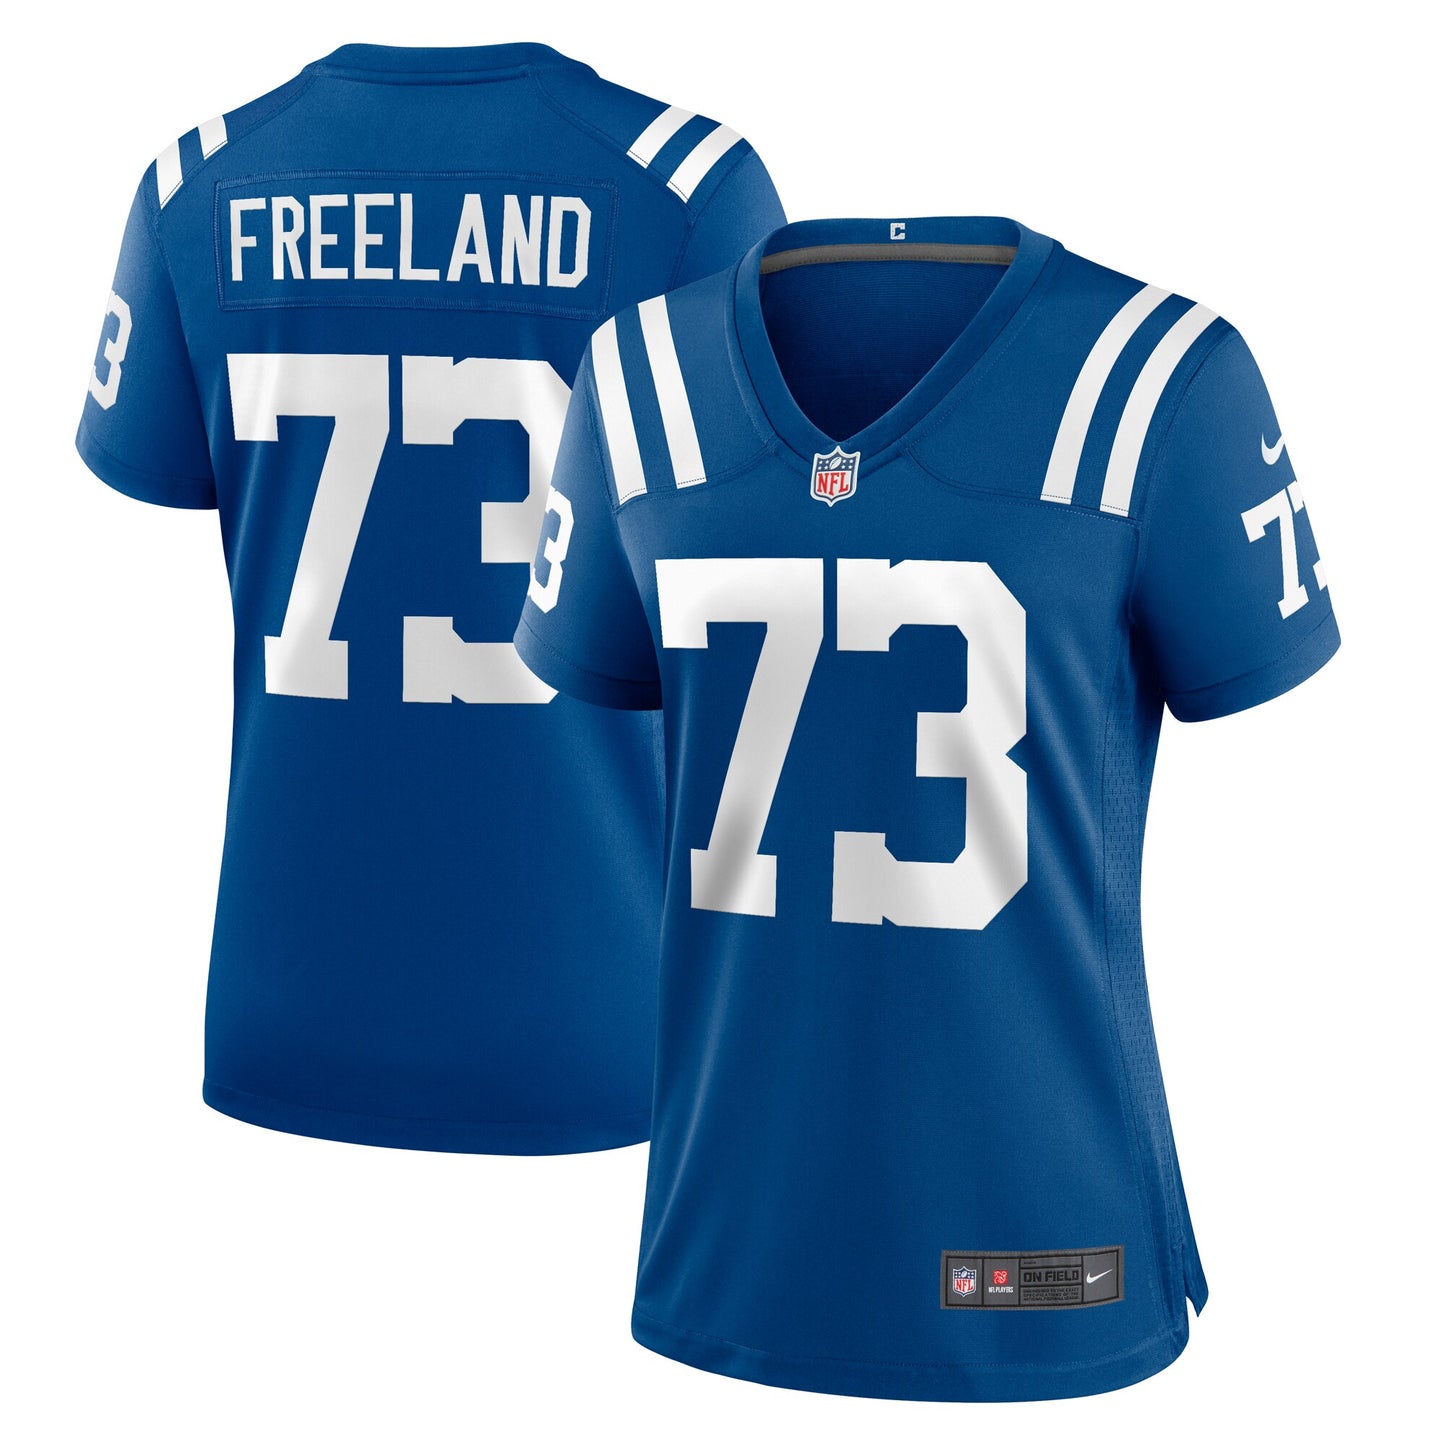 Blake Freeland Indianapolis Colts Nike Women's Team Game Jersey - Royal